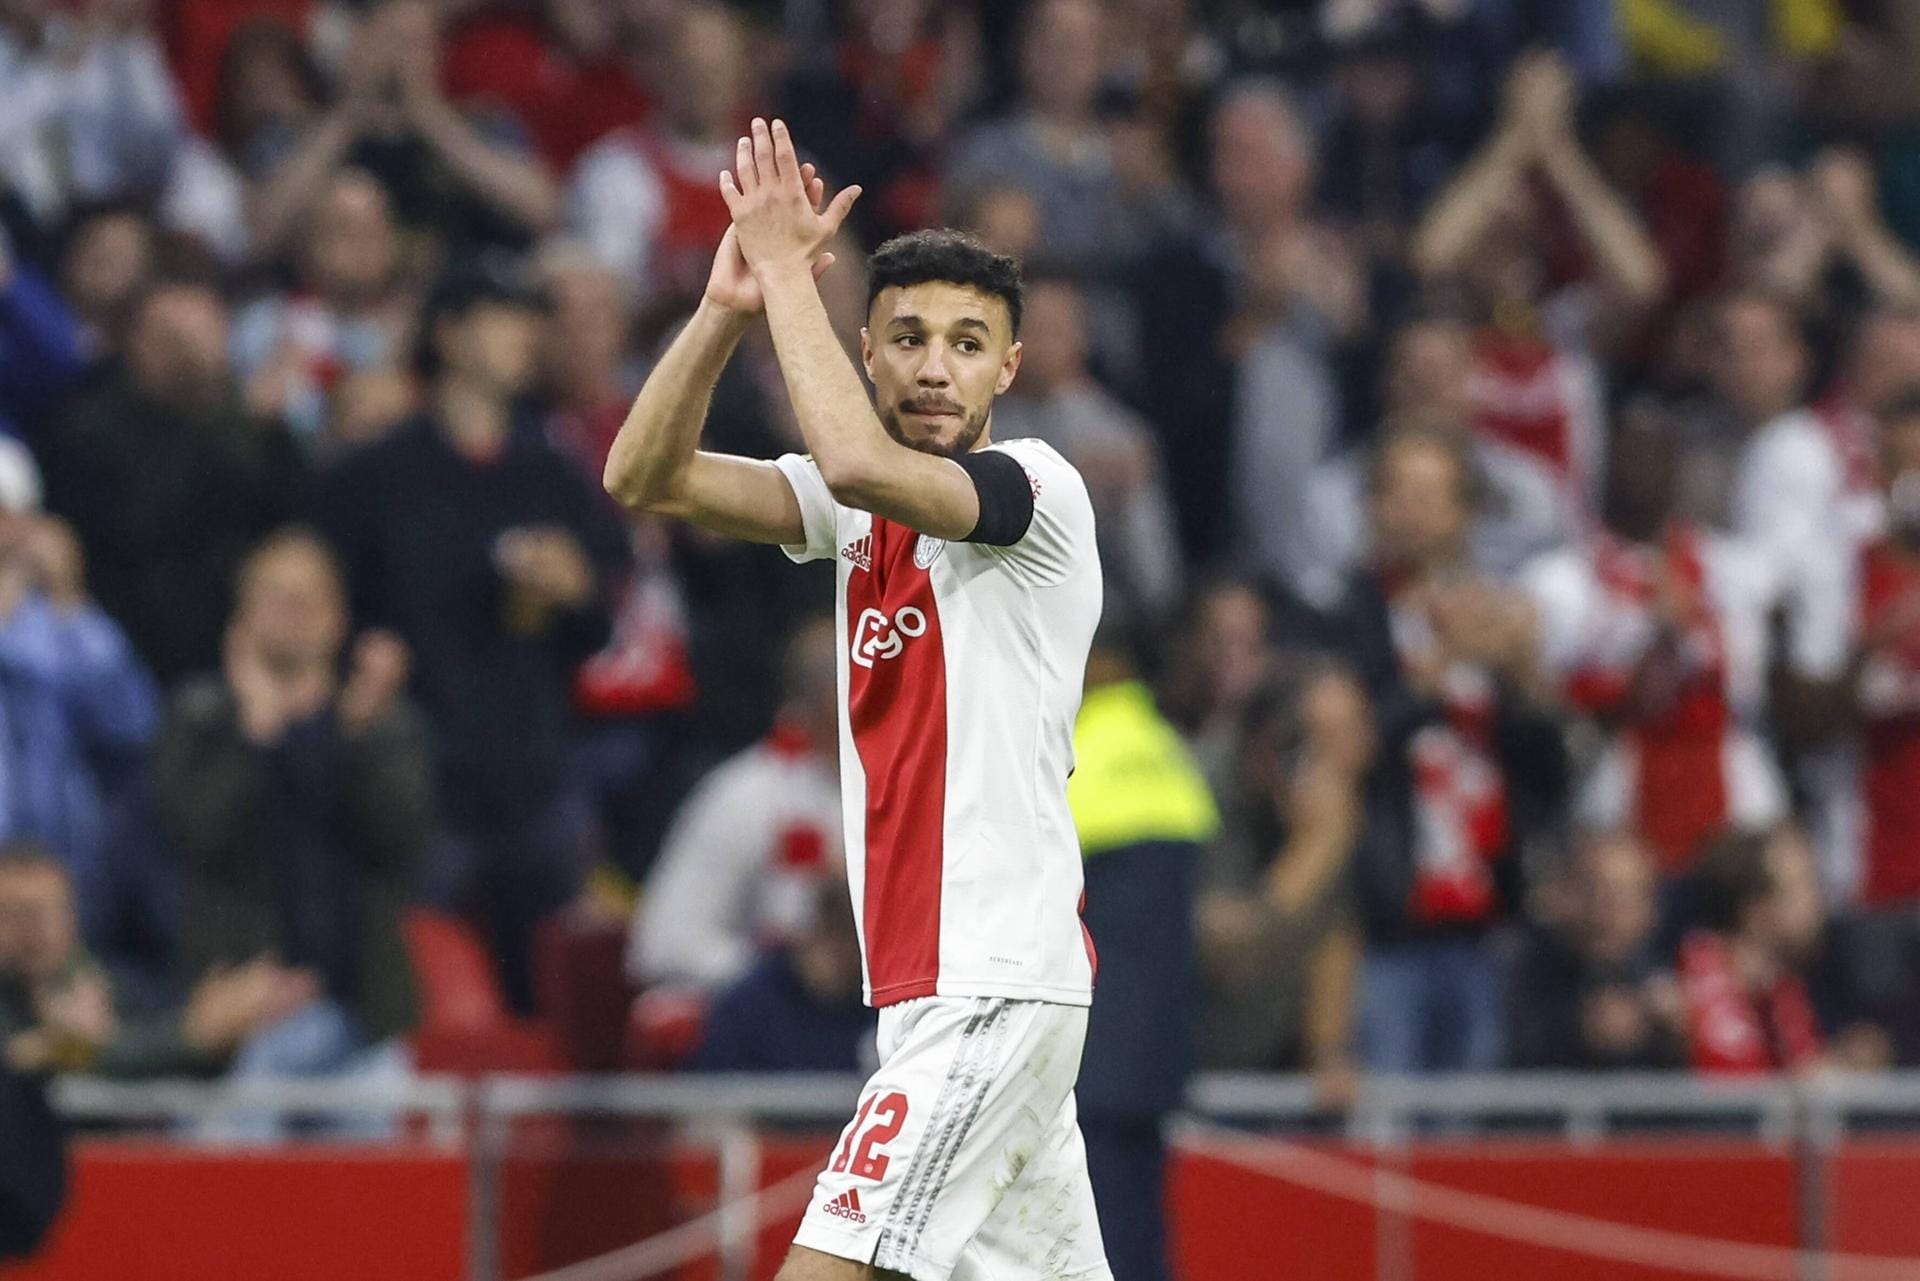 Noussair Mazraoui: Eben noch Meister geworden, nun heißt es Abschied nehmen vom niederländischen Klub Ajax Amsterdam. Nach 16 Jahren wechselt der Rechtsverteidiger ablösefrei zum Rekordmeister nach München. Der 24-Jährige unterschrieb einen Vertrag bis 2026 und soll die defensive Instabilität ausbessern.